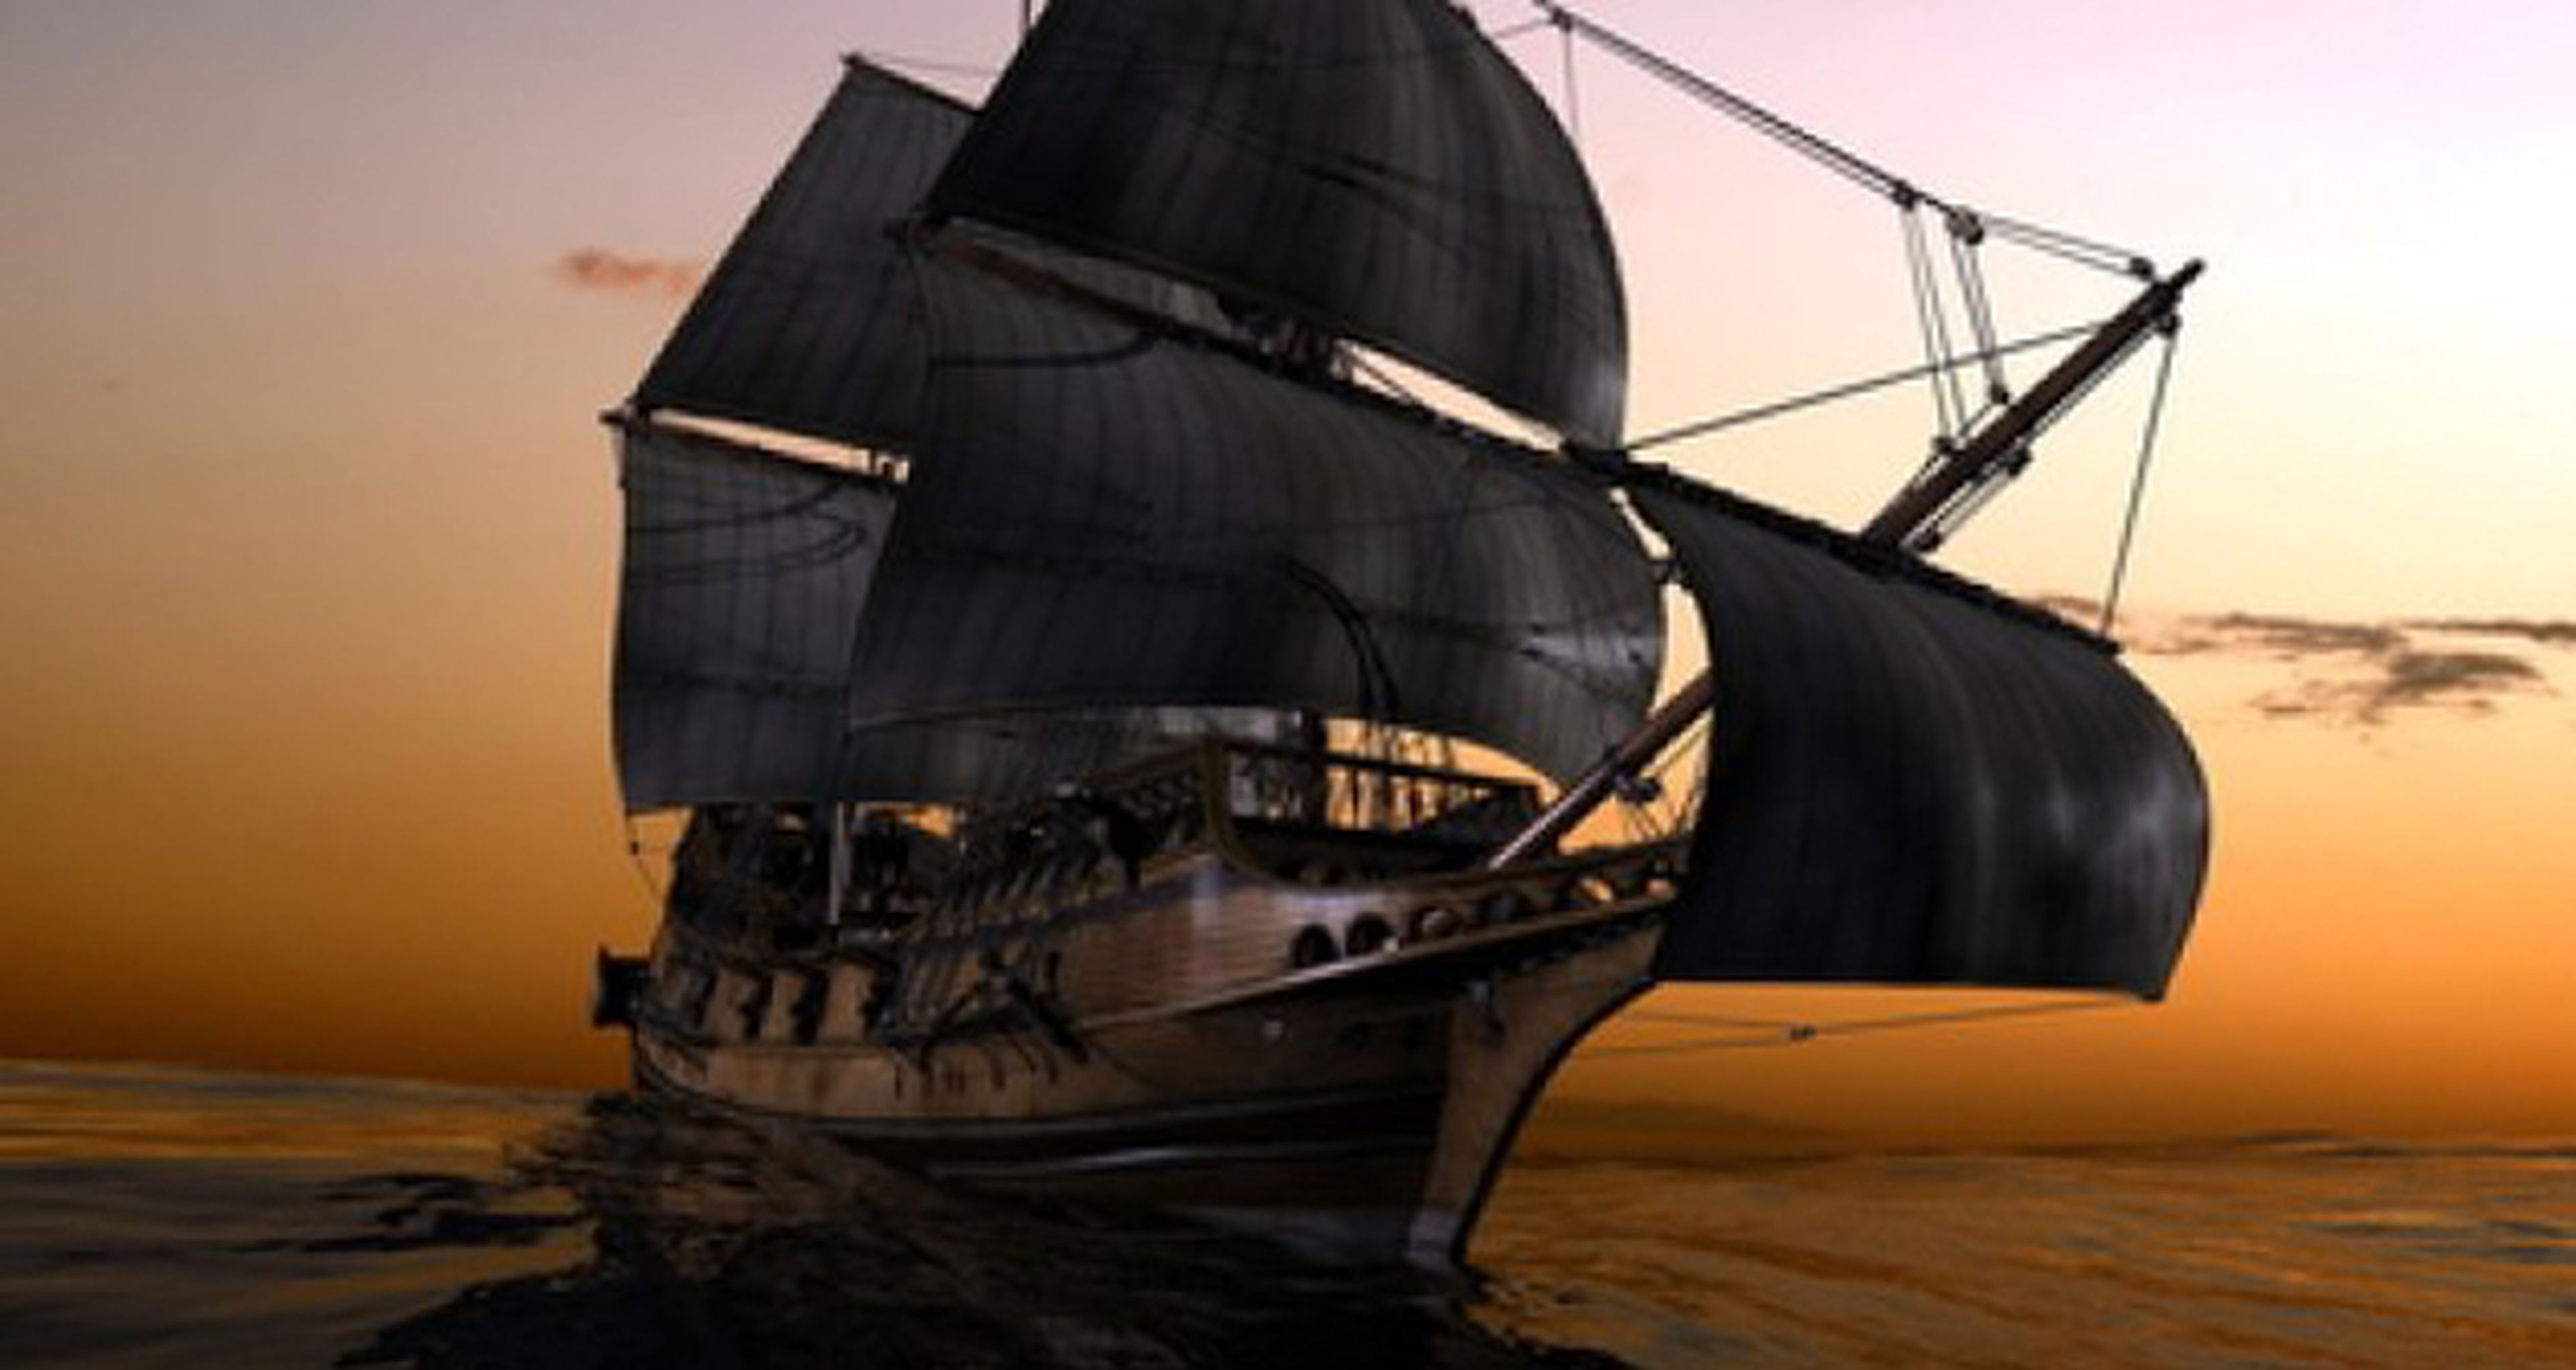 Promo de Black Sails, la nueva serie de piratas de Starz